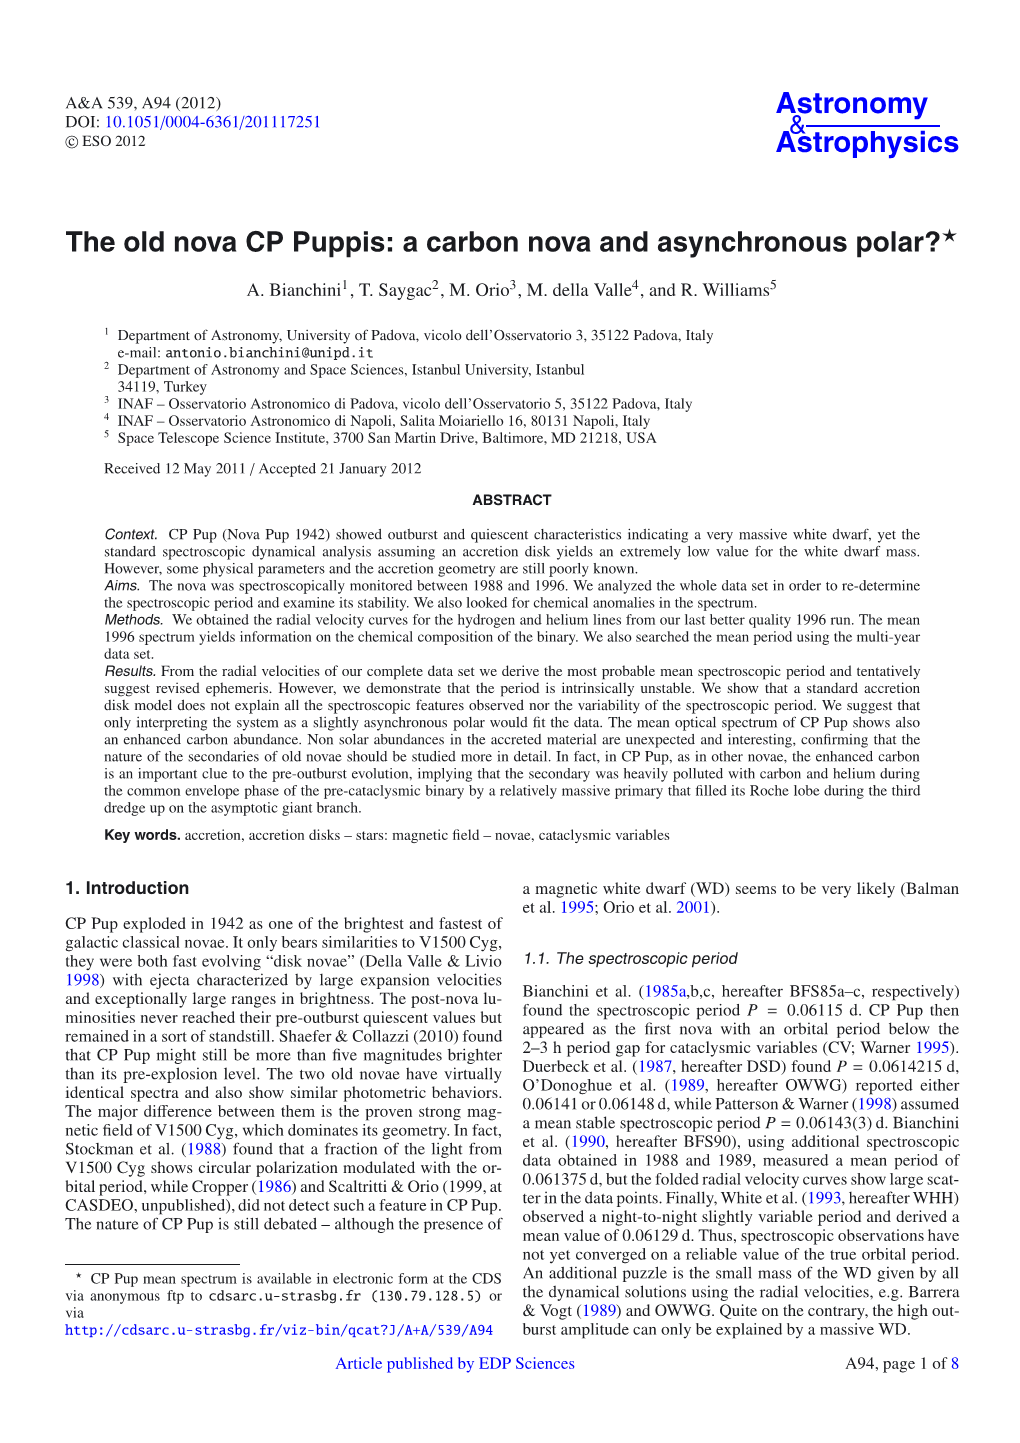 The Old Nova CP Puppis: a Carbon Nova and Asynchronous Polar?⋆